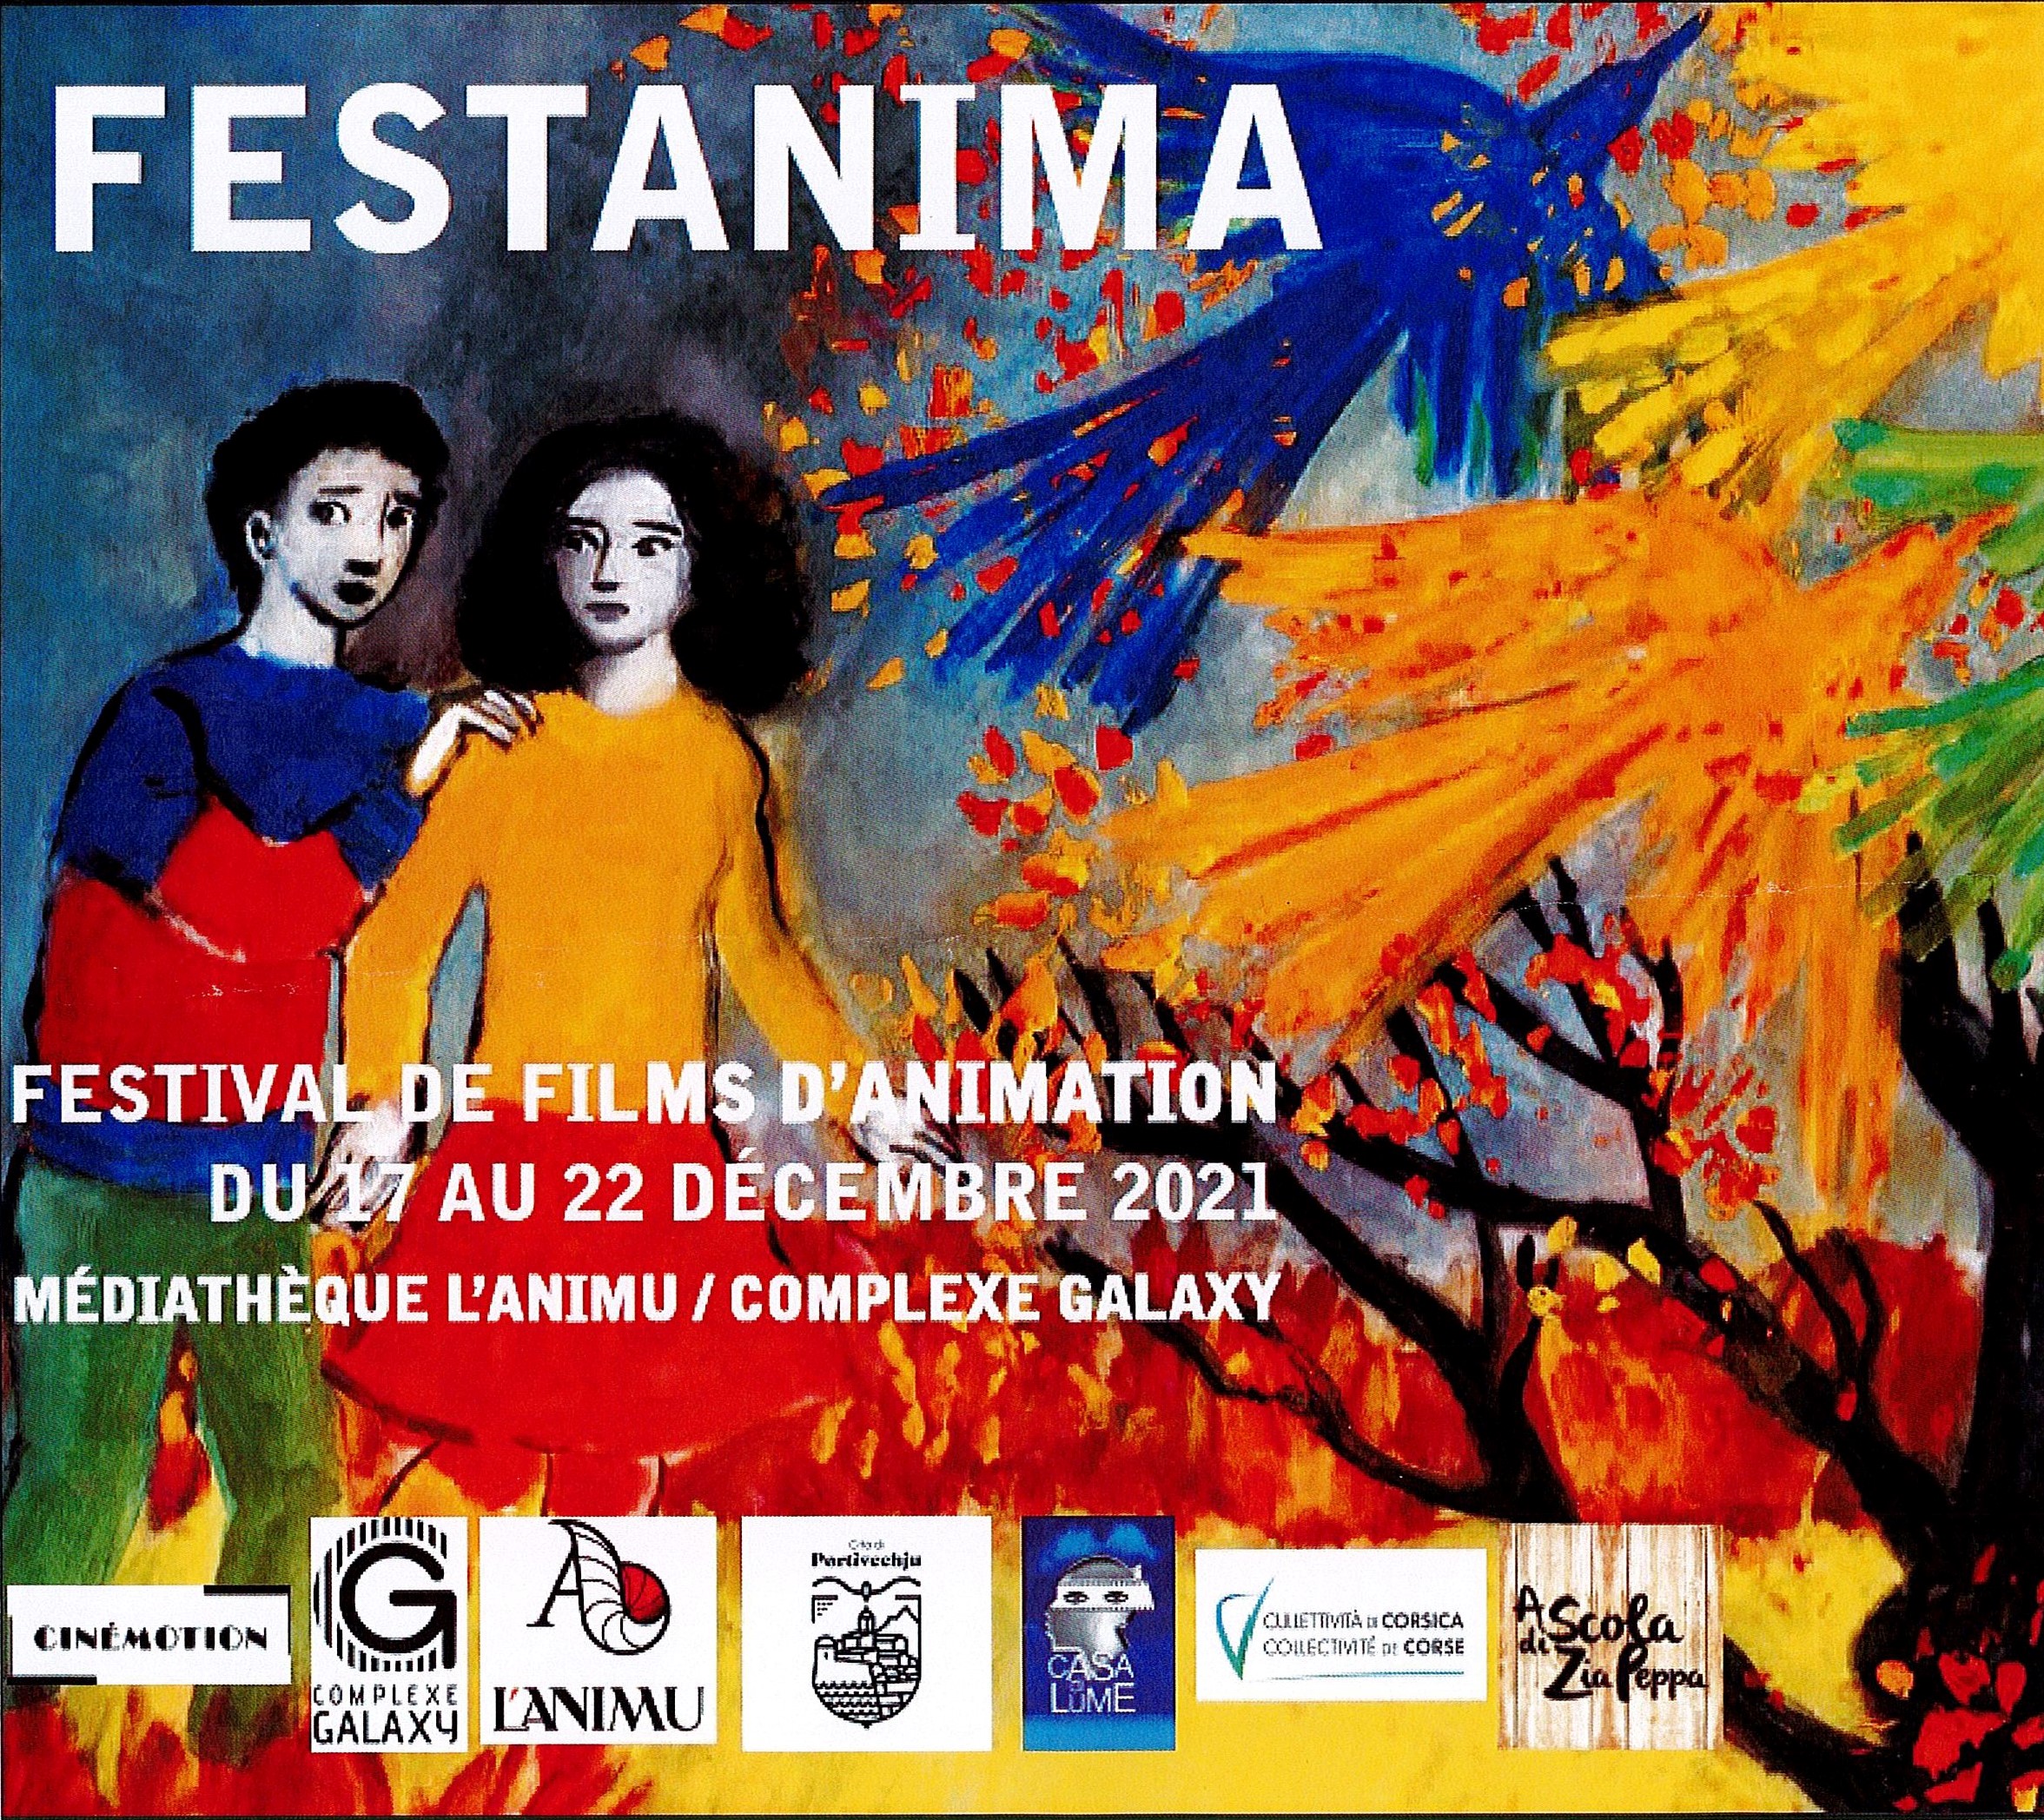 Festival de films d'animation du 17 au 22 décembre 2021- Médiathèque L'ANIMU / Complexe GALAXY 